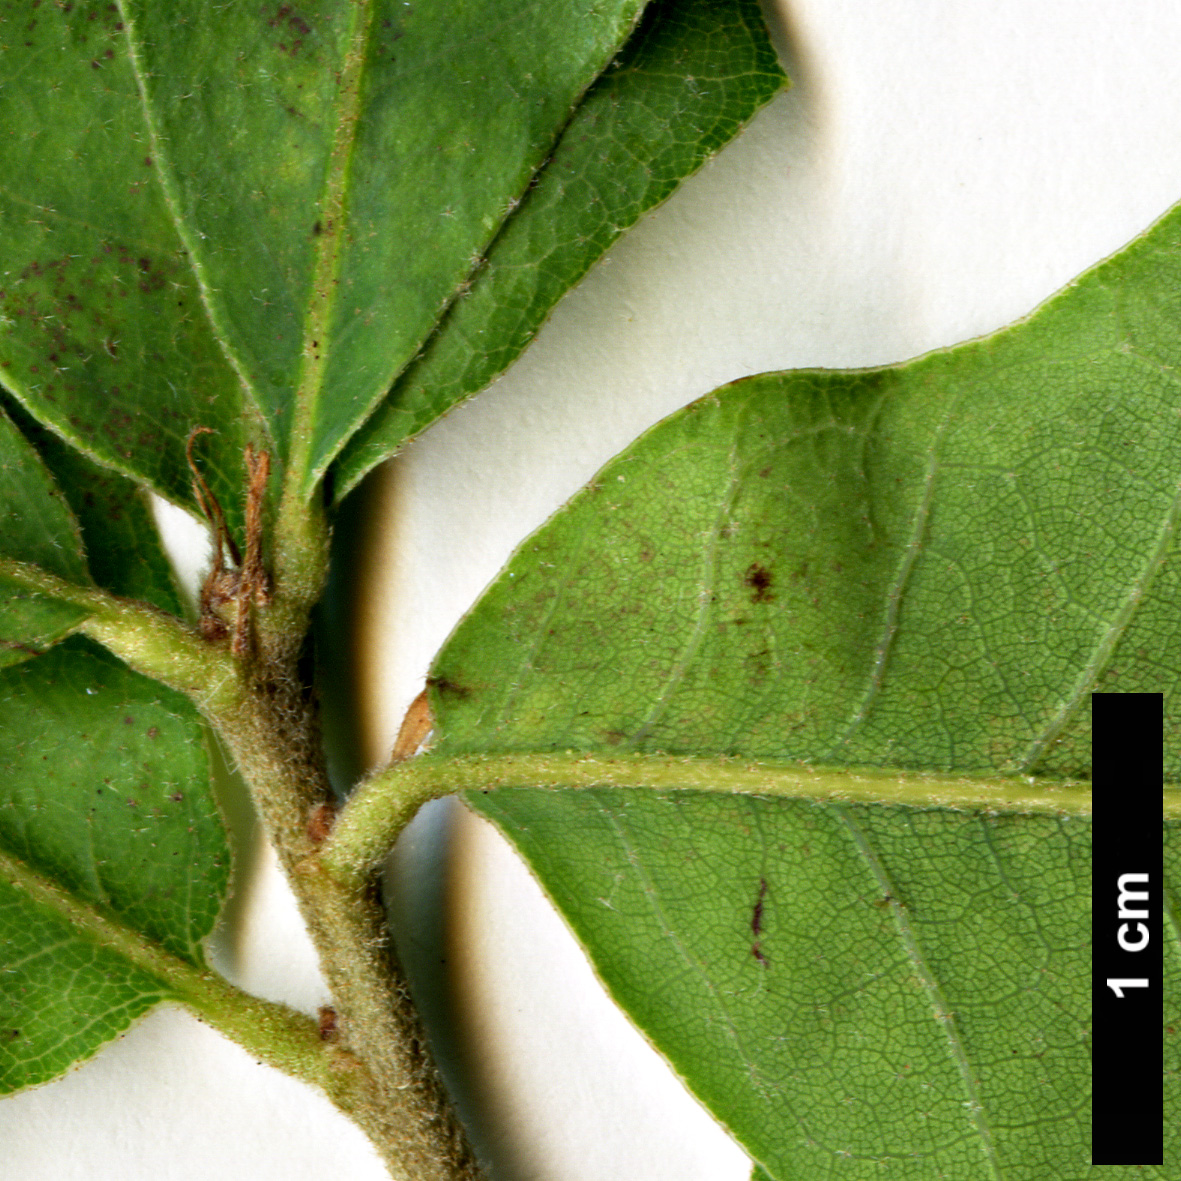 High resolution image: Family: Fagaceae - Genus: Quercus - Taxon: mohriana × Q.stellata